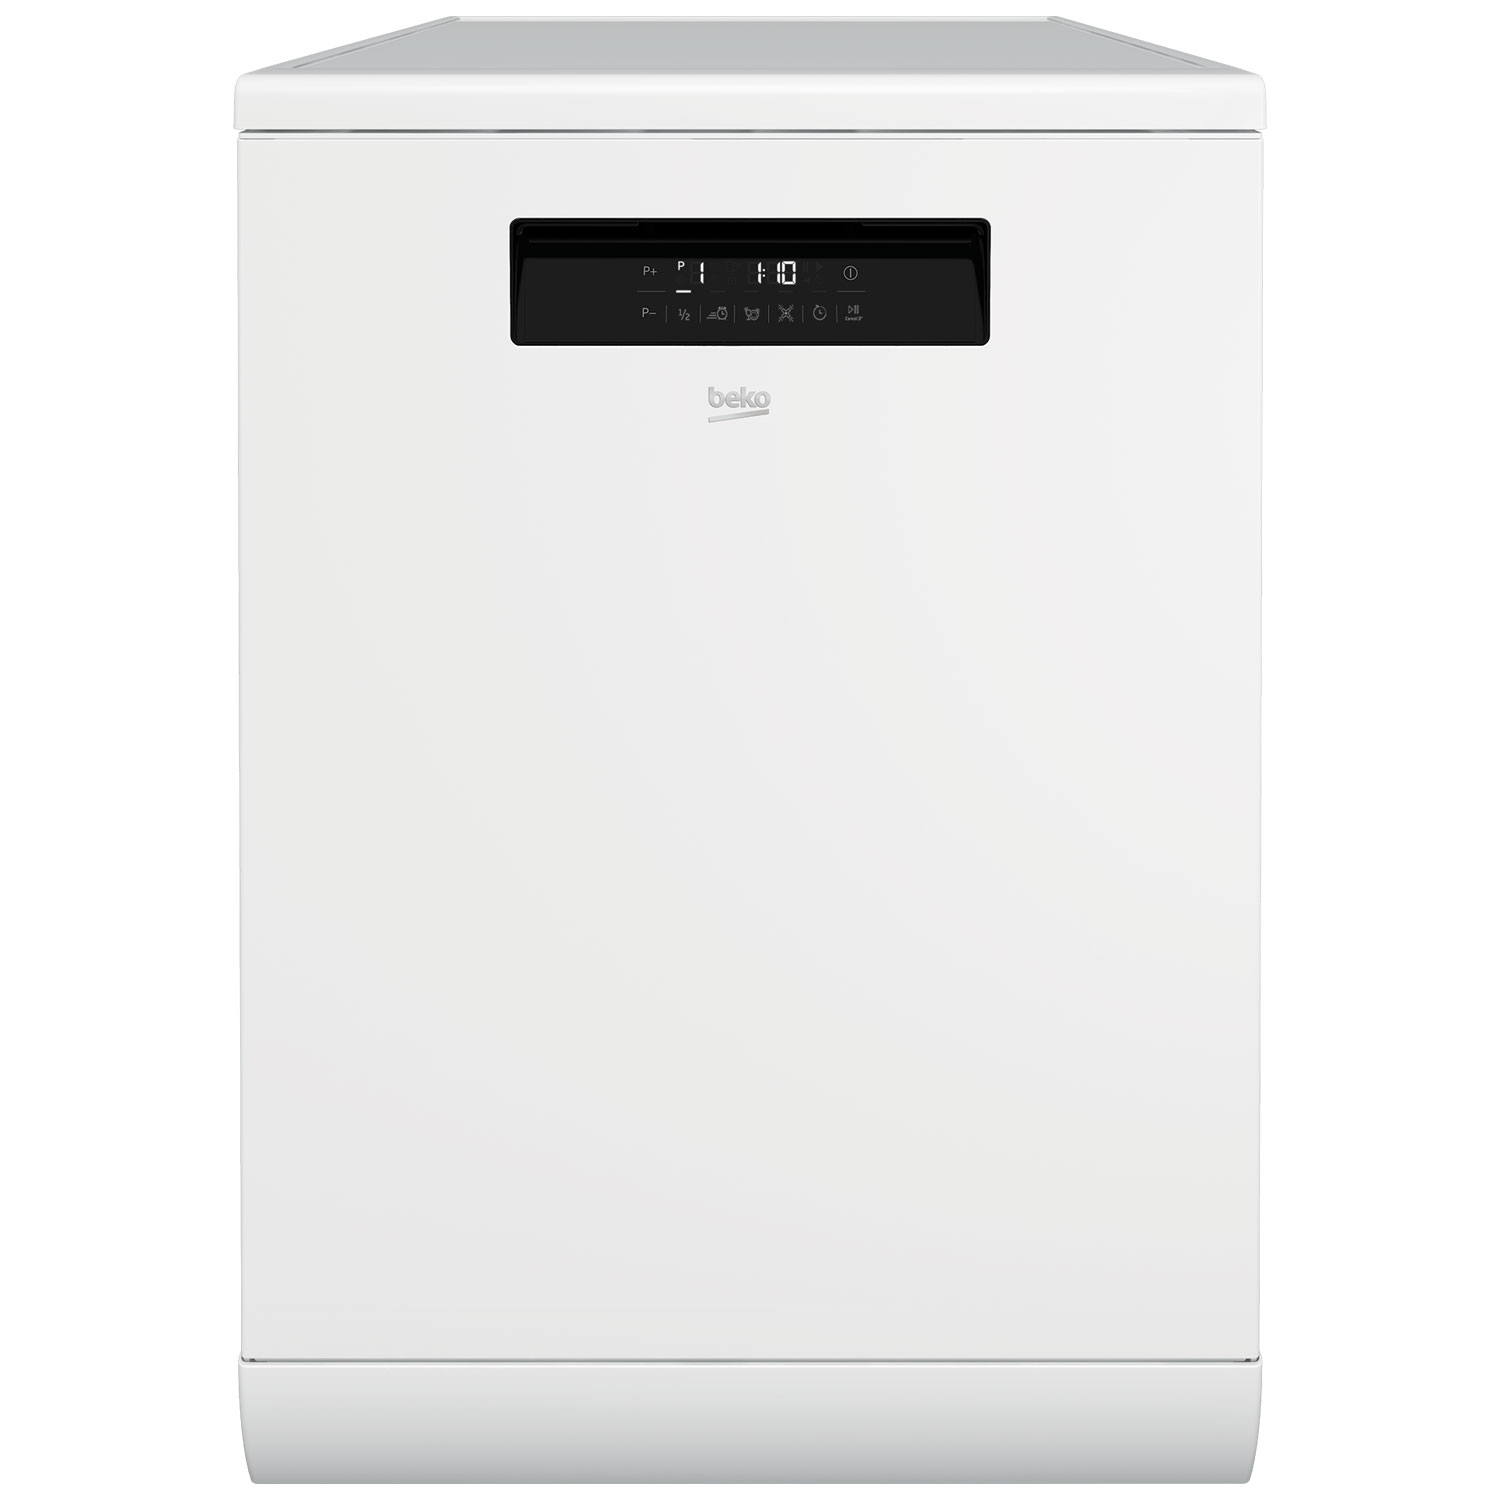 ماشین ظرفشویی 15 نفره مدل DFN38530W بکو - قیمت ظرفشویی بکو - بکو لند